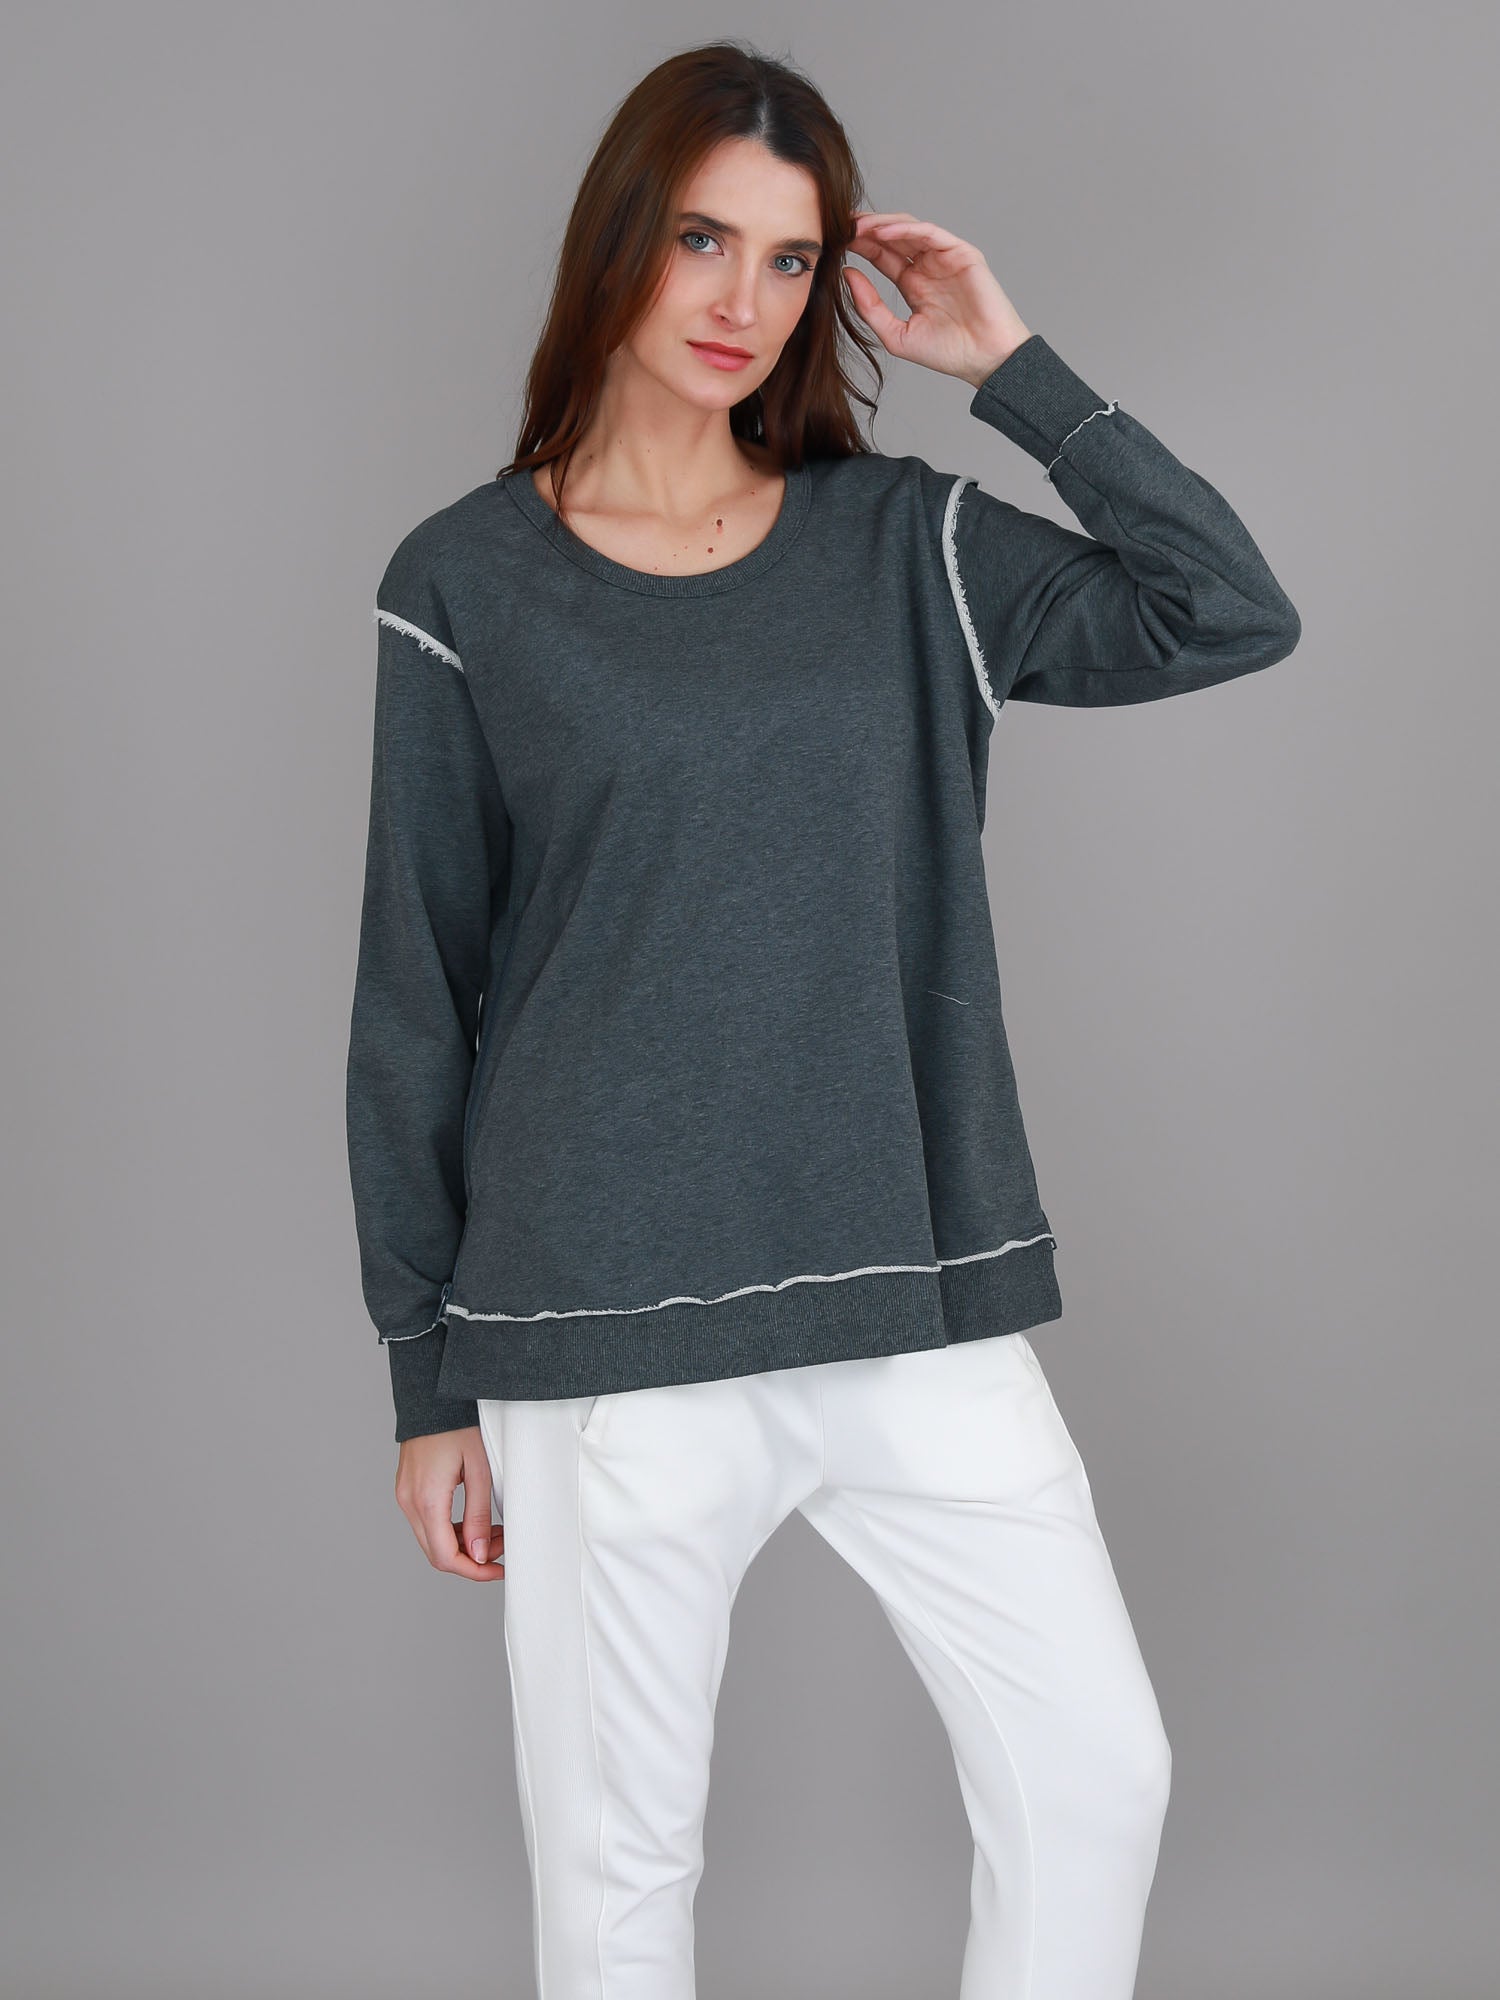 women's grey sweatshirt #color_ash marle